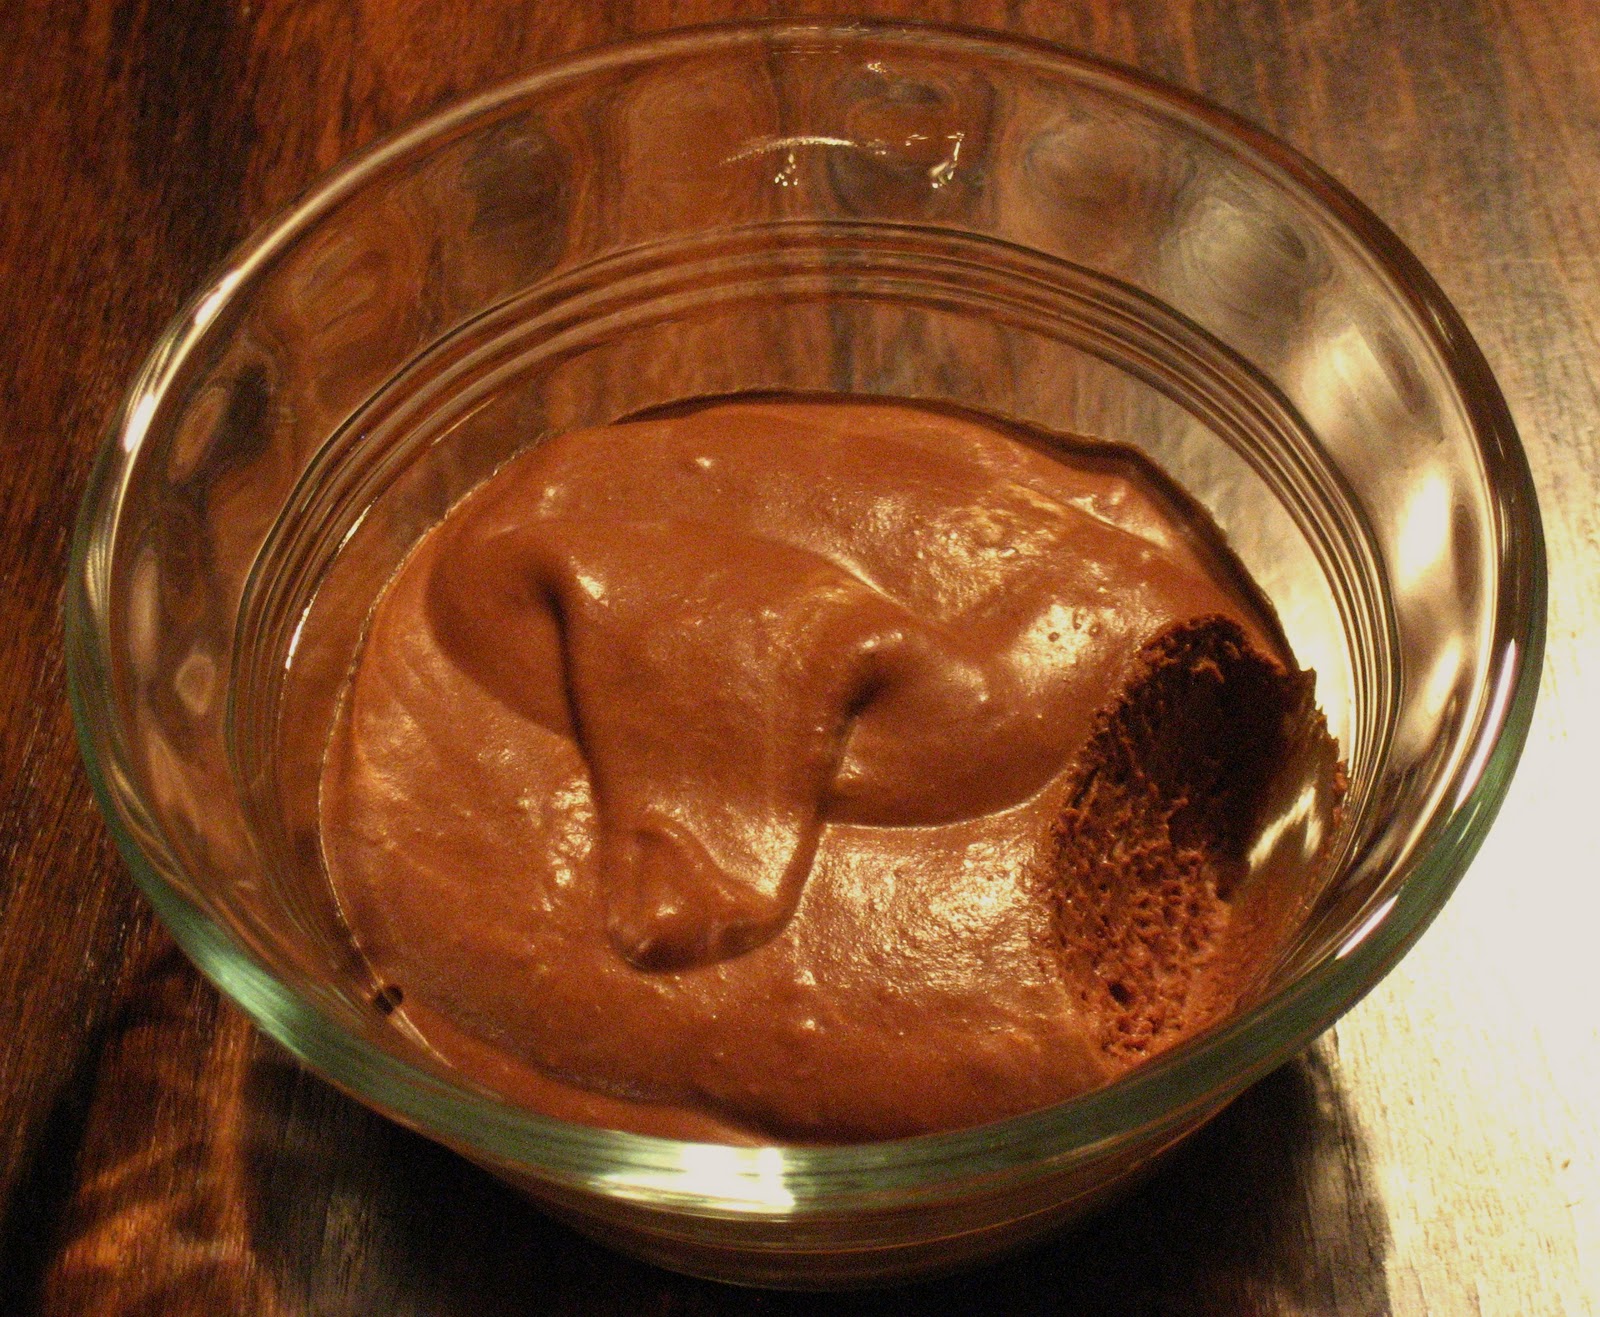 The Foodie Next Door: Chocolate Mousse